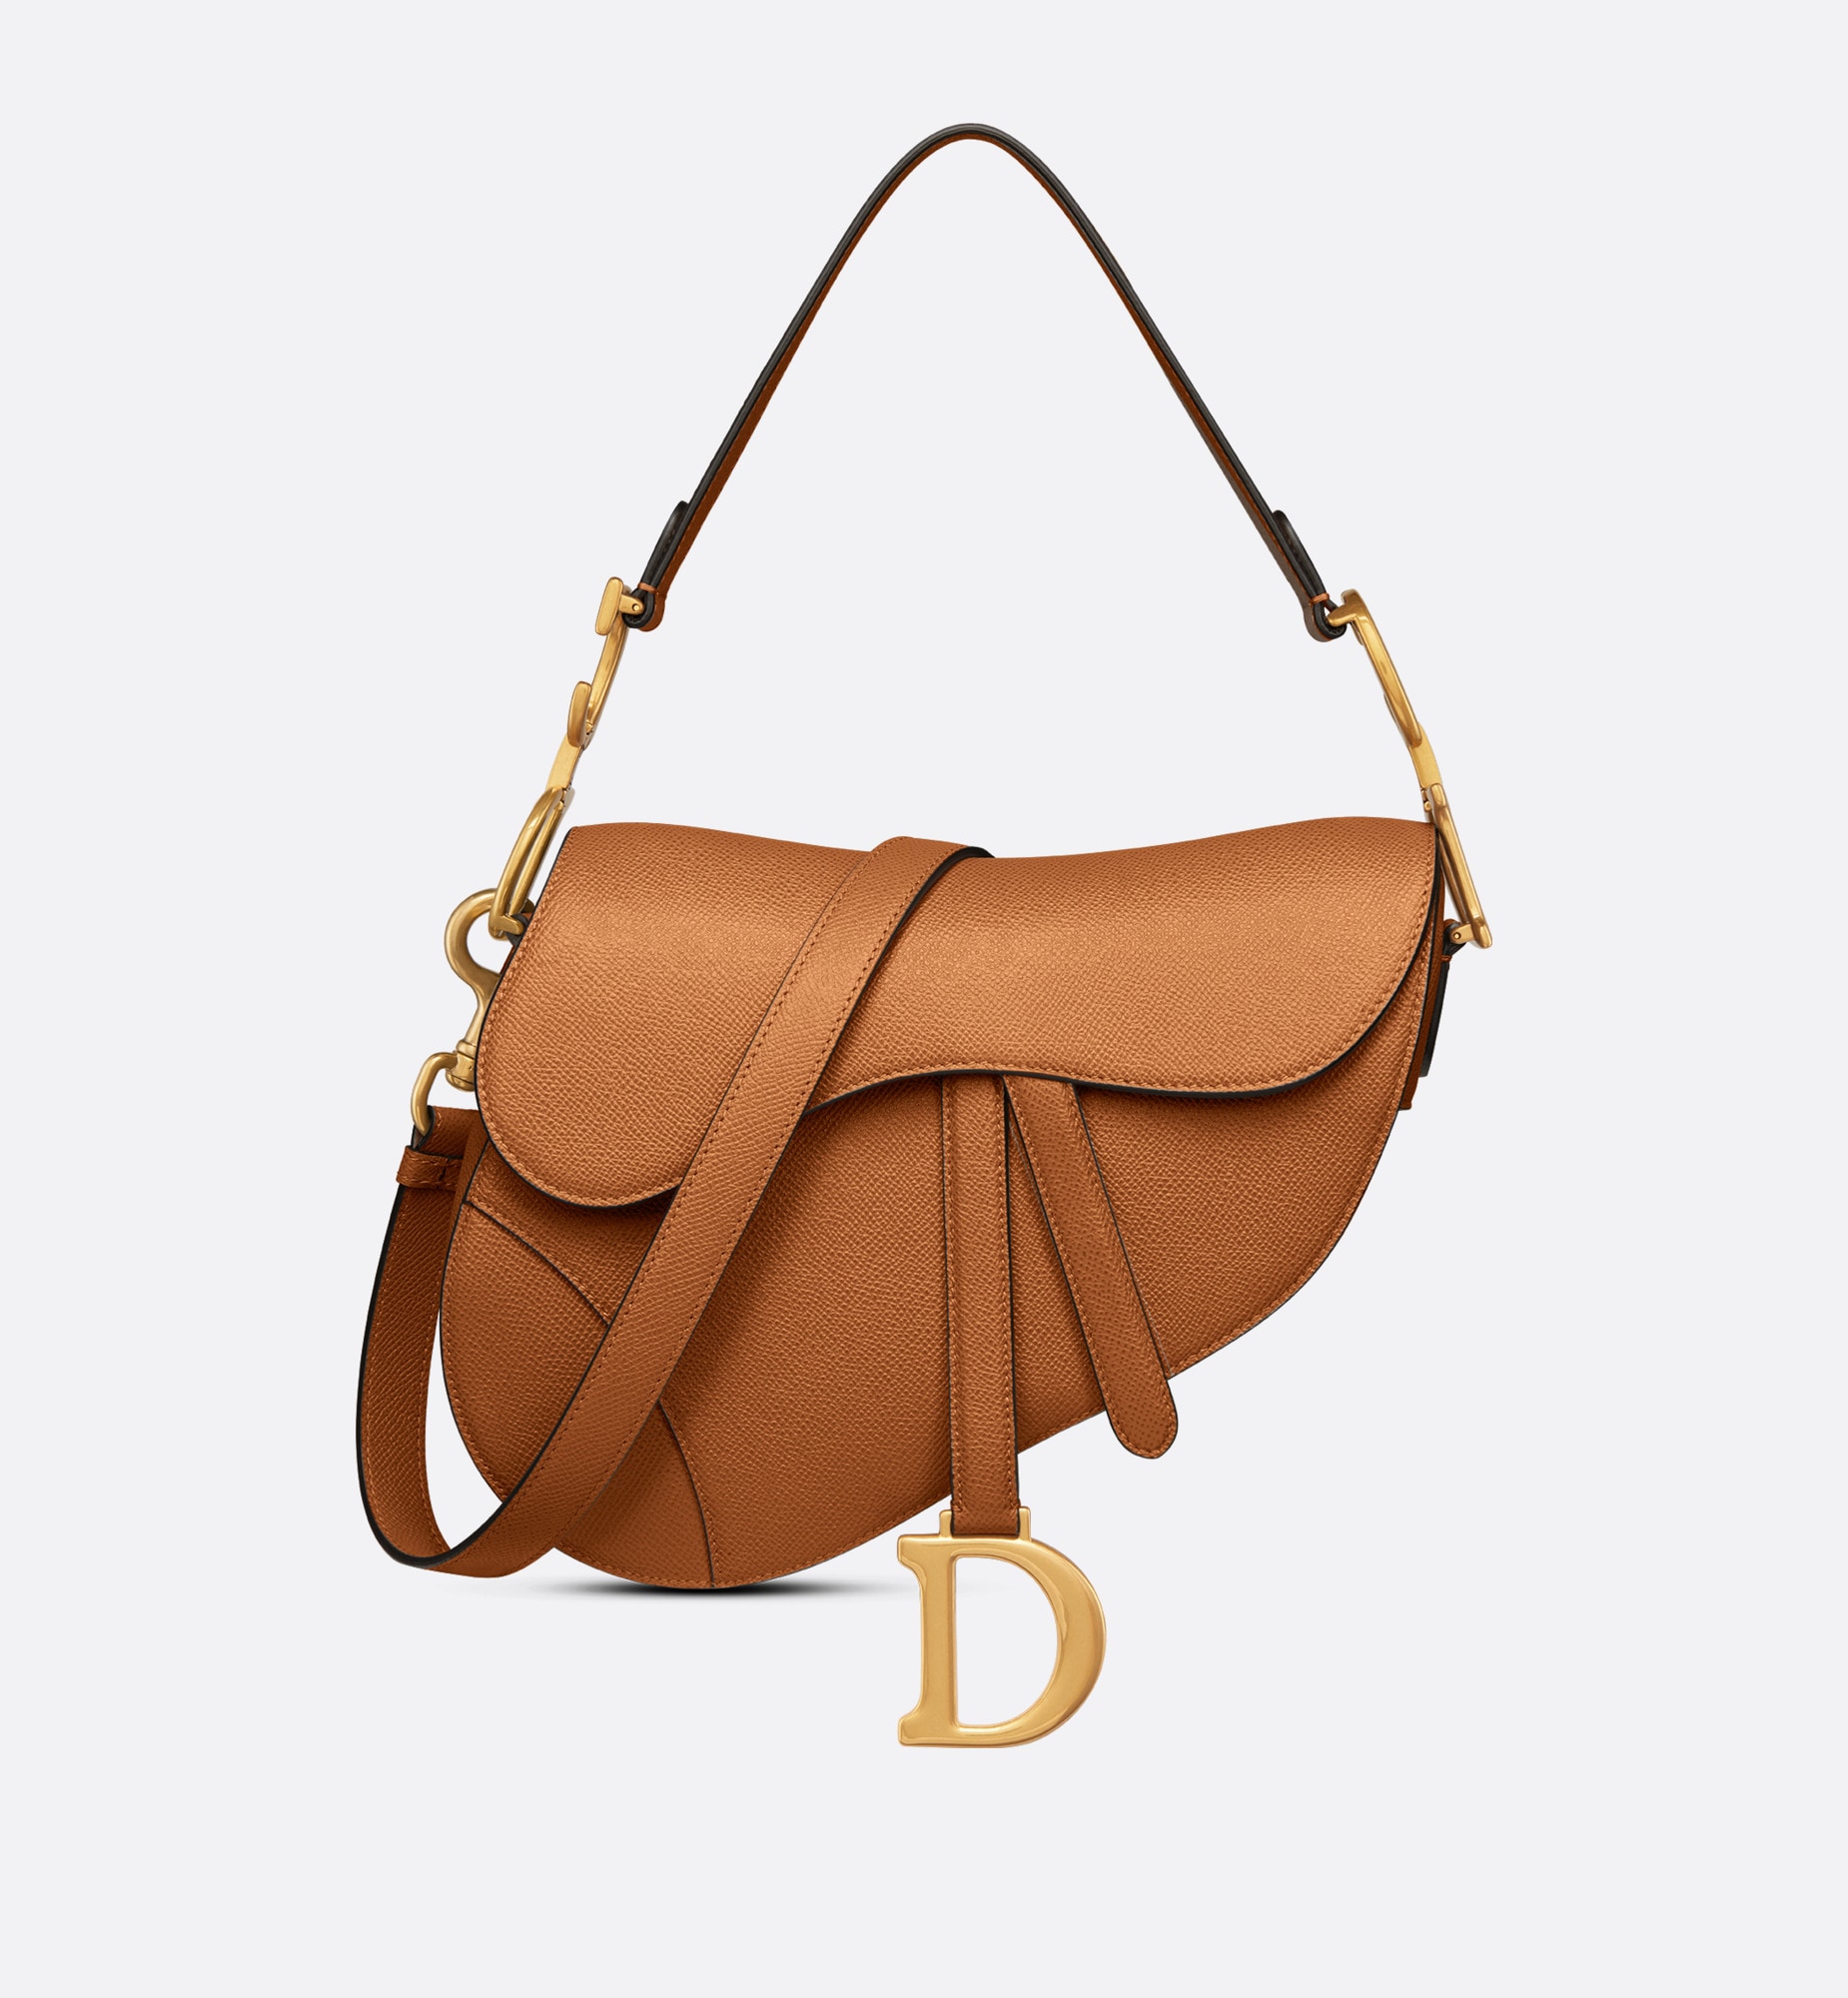 Dior saddle bag with strap golden saddle grained calfskin